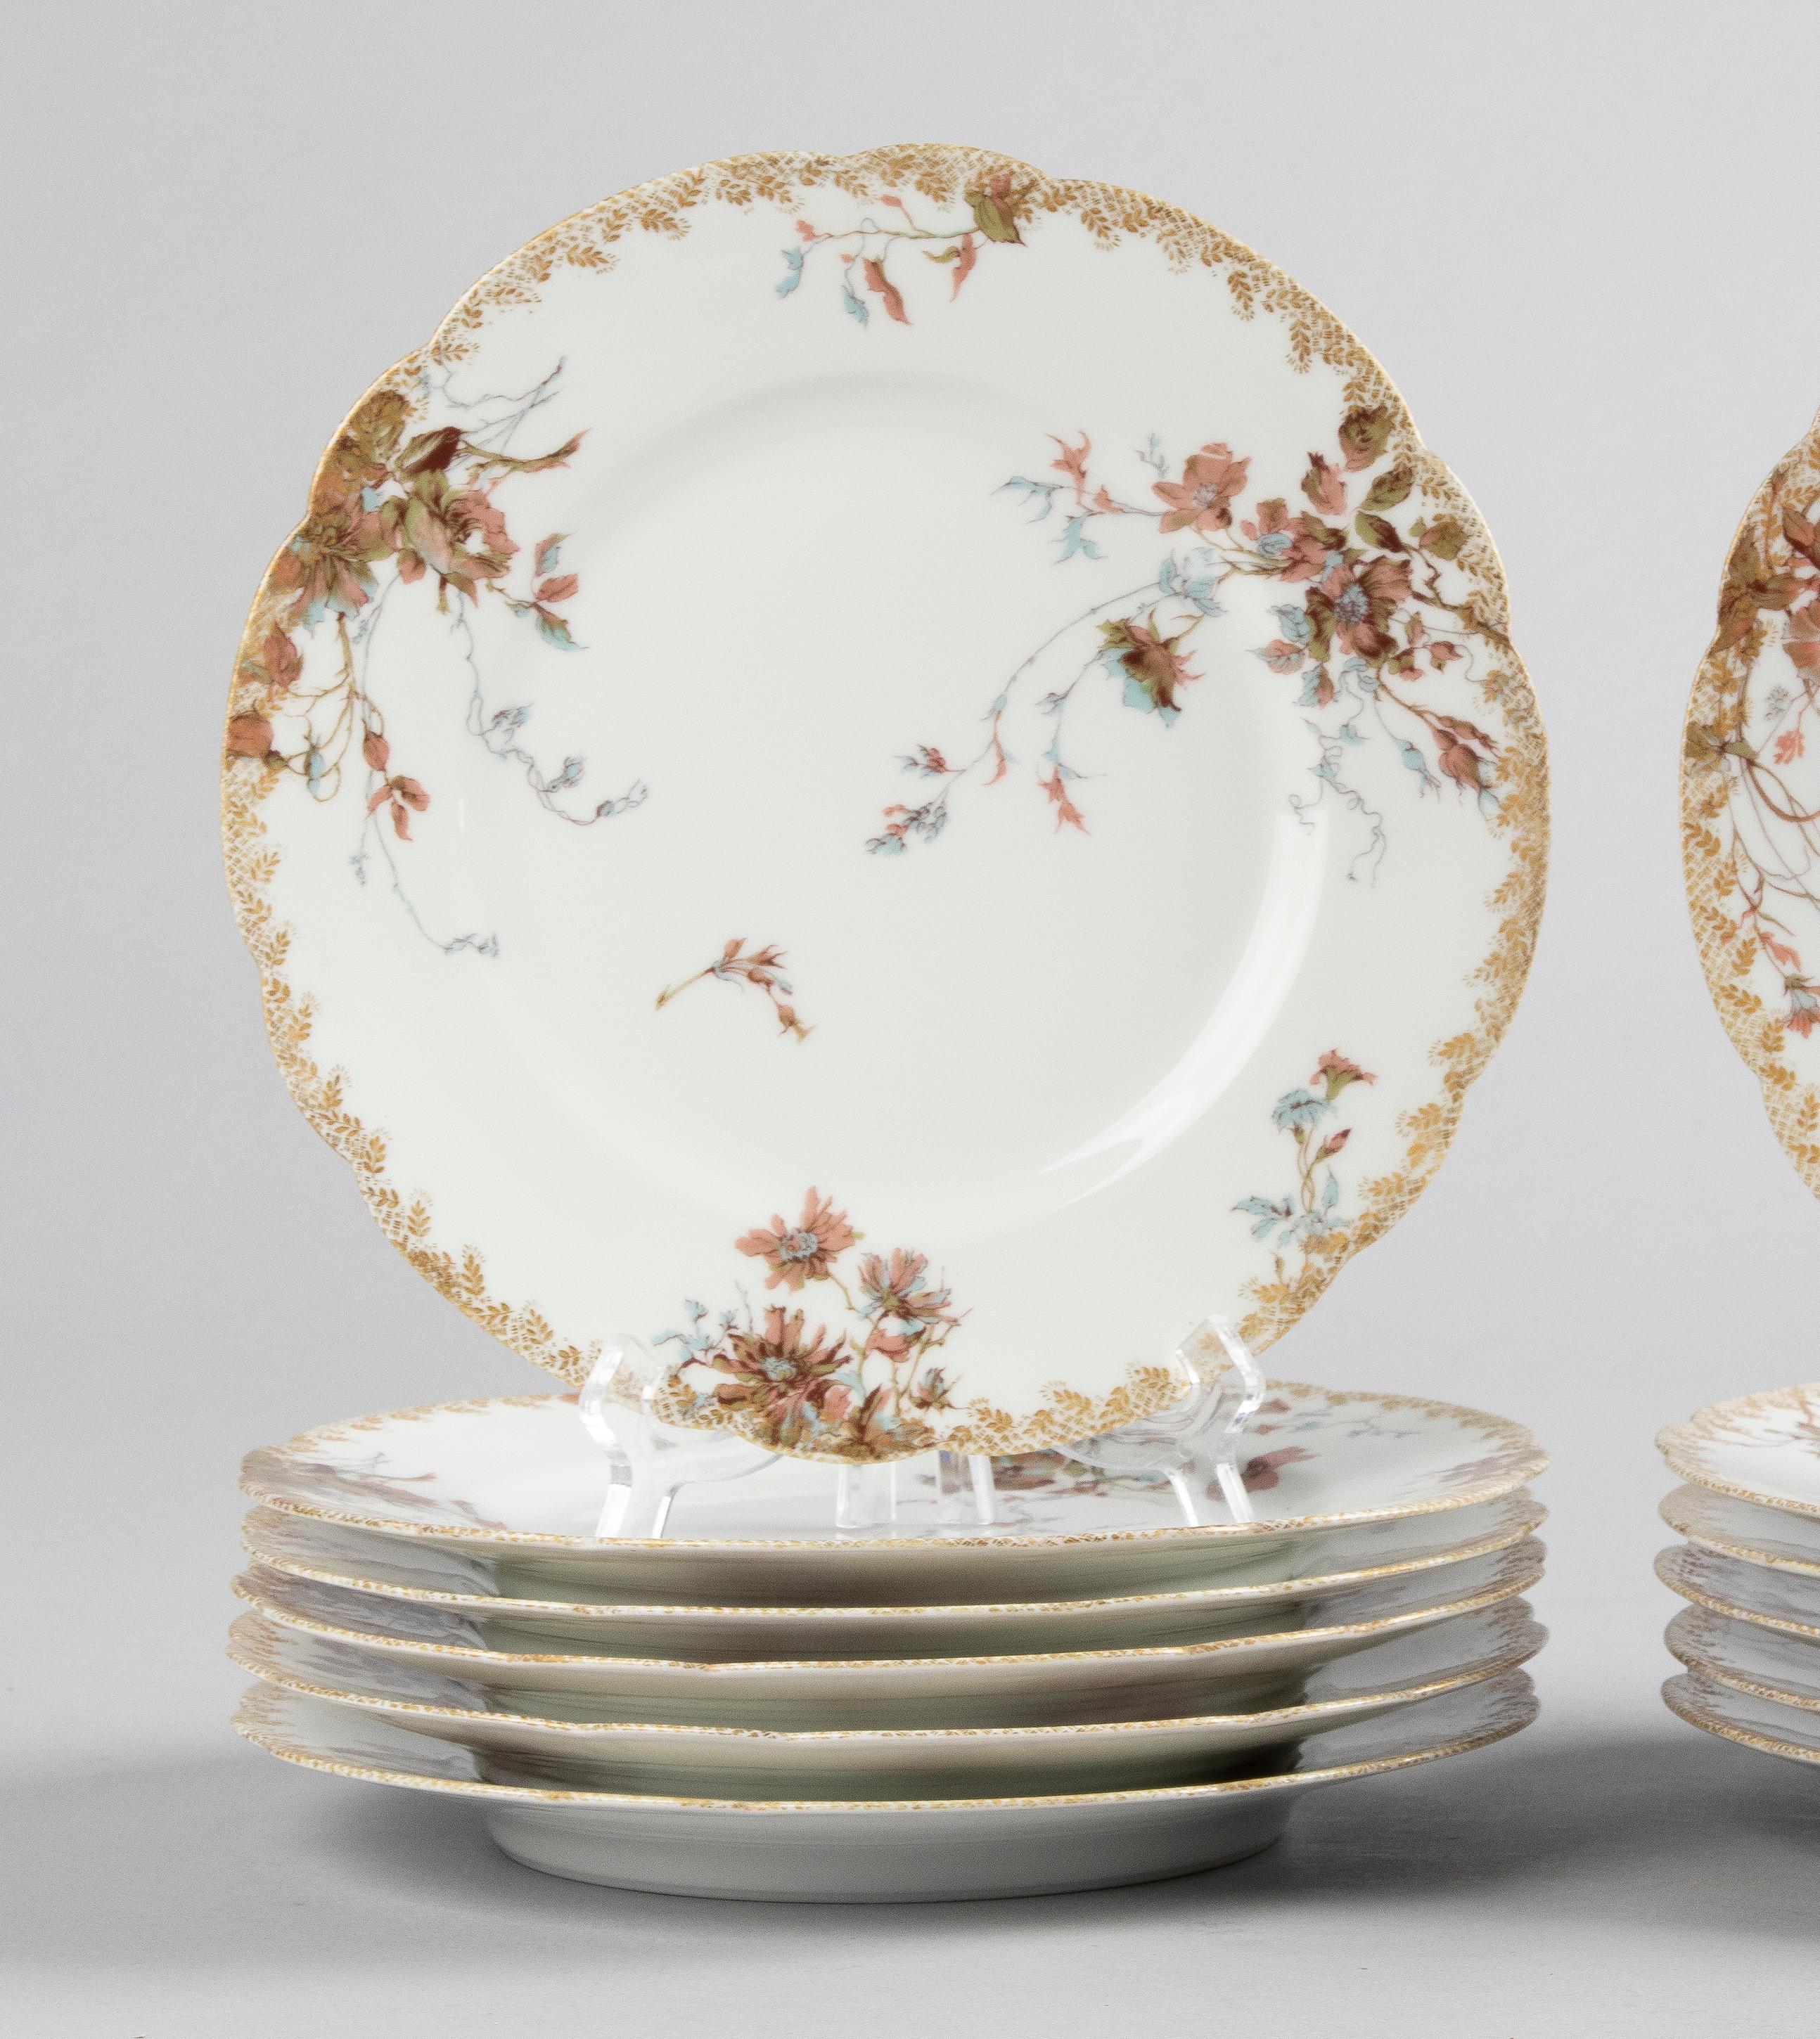 Magnifique ensemble de 12 assiettes à dîner en porcelaine du fabricant français Haviland Limoges. La porcelaine est décorée de toutes sortes de fleurs différentes et d'accents dorés dans un style Art nouveau typique. Belle dorure sur les bords. Les